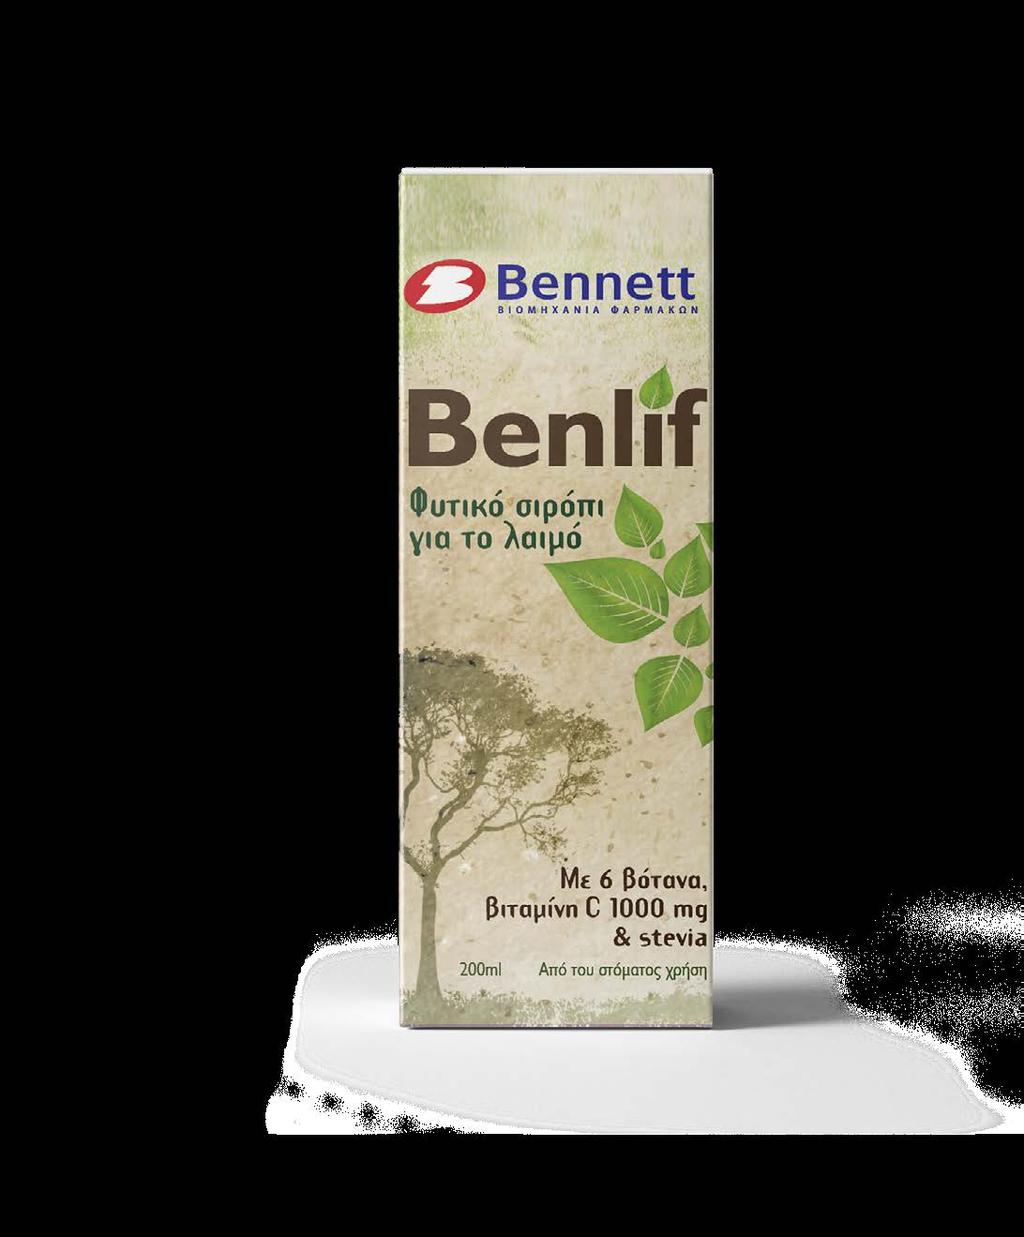 Περιέχει την φυτική γλυκαντική ουσία stevia ιδανική για διαβητικούς ασθενείς CL 20031 Benlif Syrup 200ml Bennett Benlif Kids Syrup 200ml